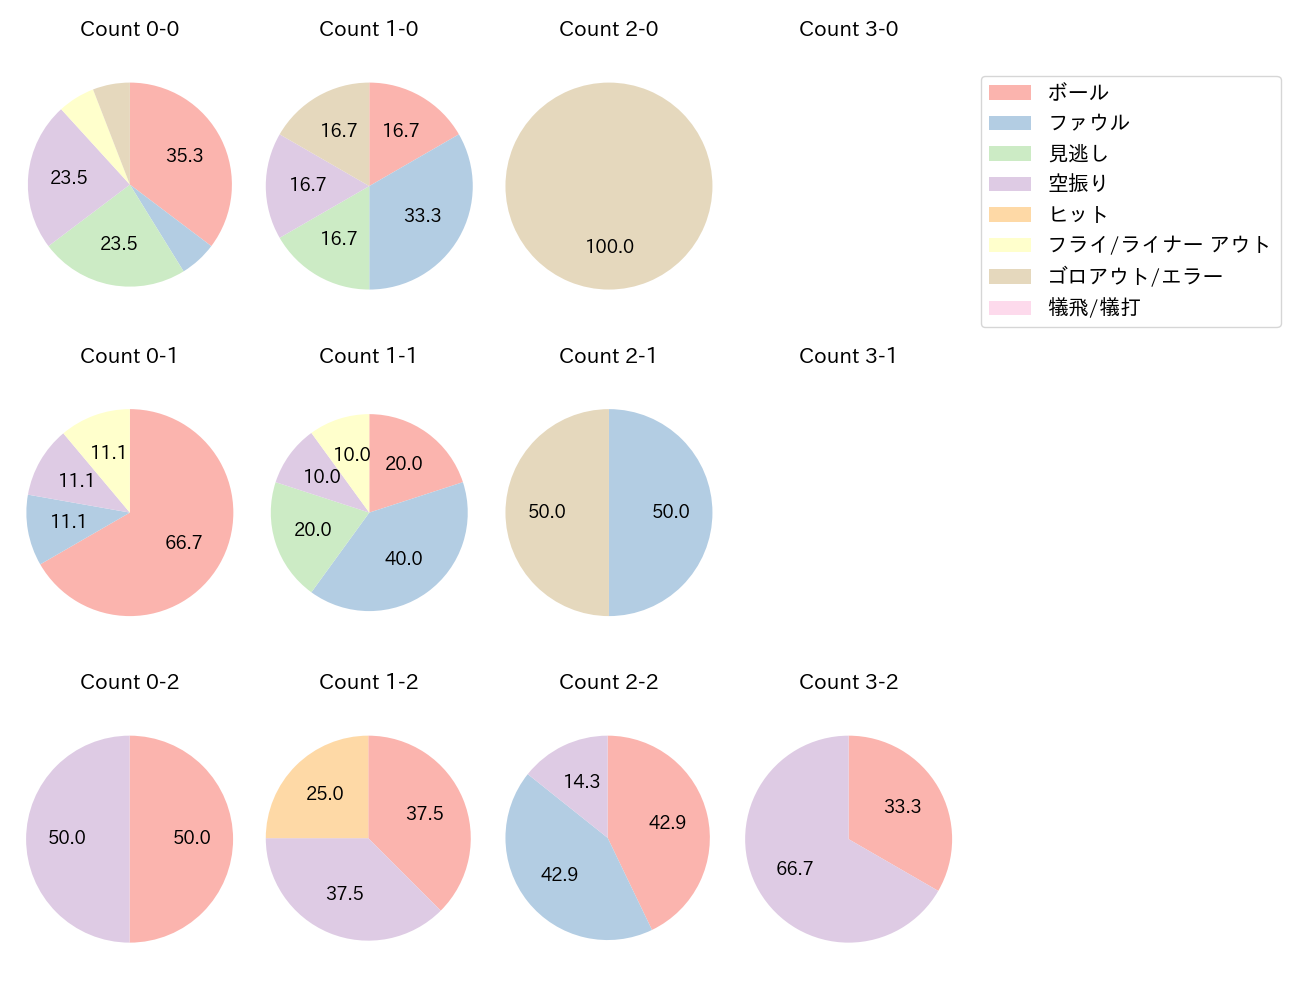 太田 椋の球数分布(2021年5月)